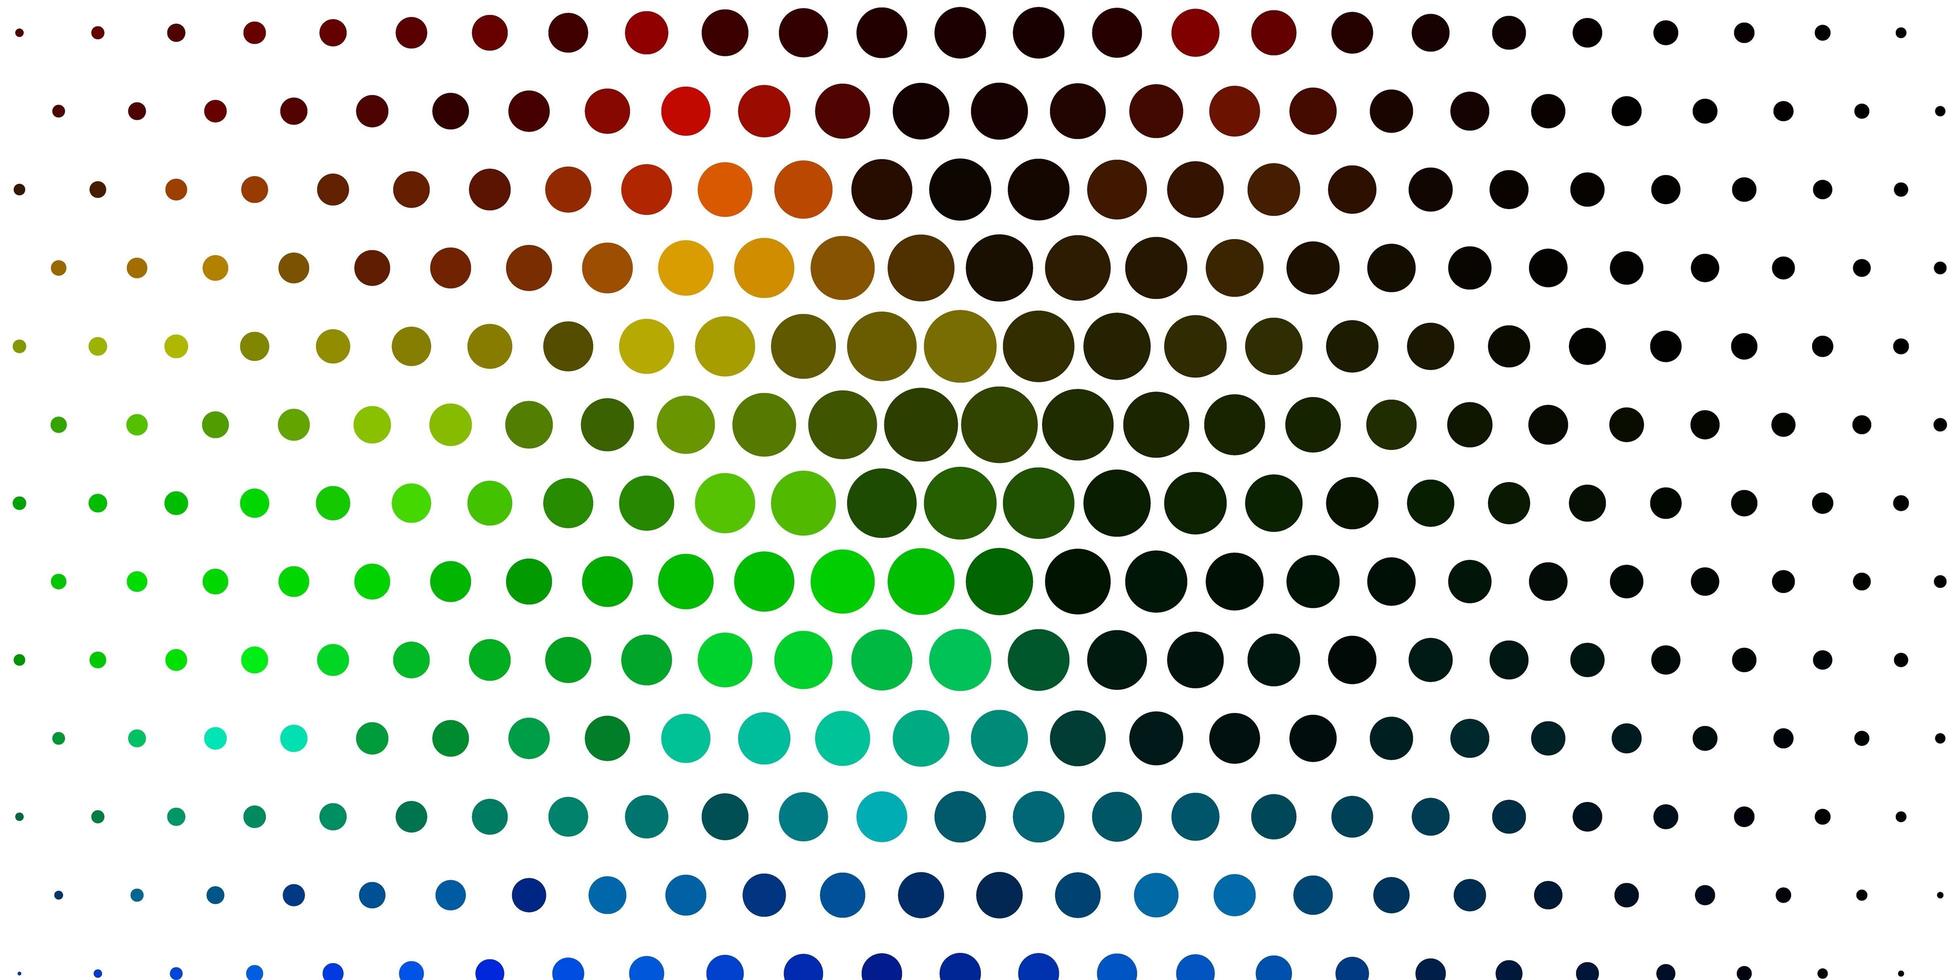 luz de fundo multicolor vector com pontos.